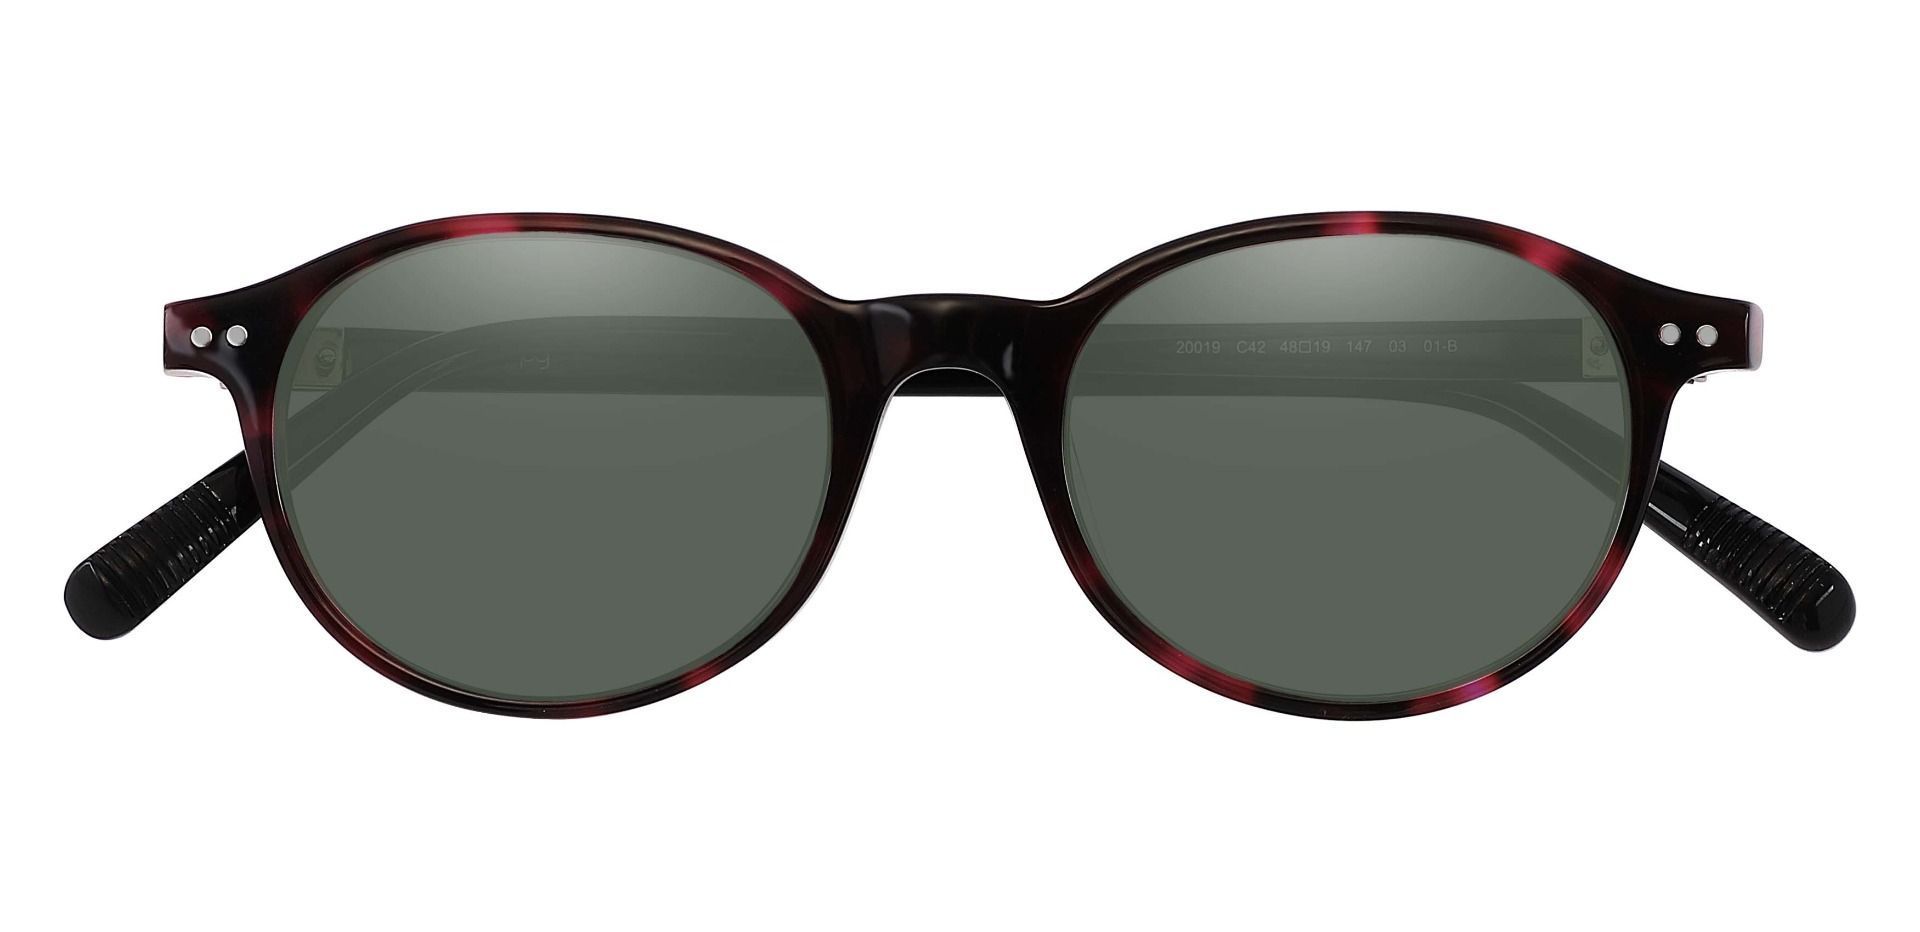 Avon Oval Reading Sunglasses - Tortoise Frame With Green Lenses